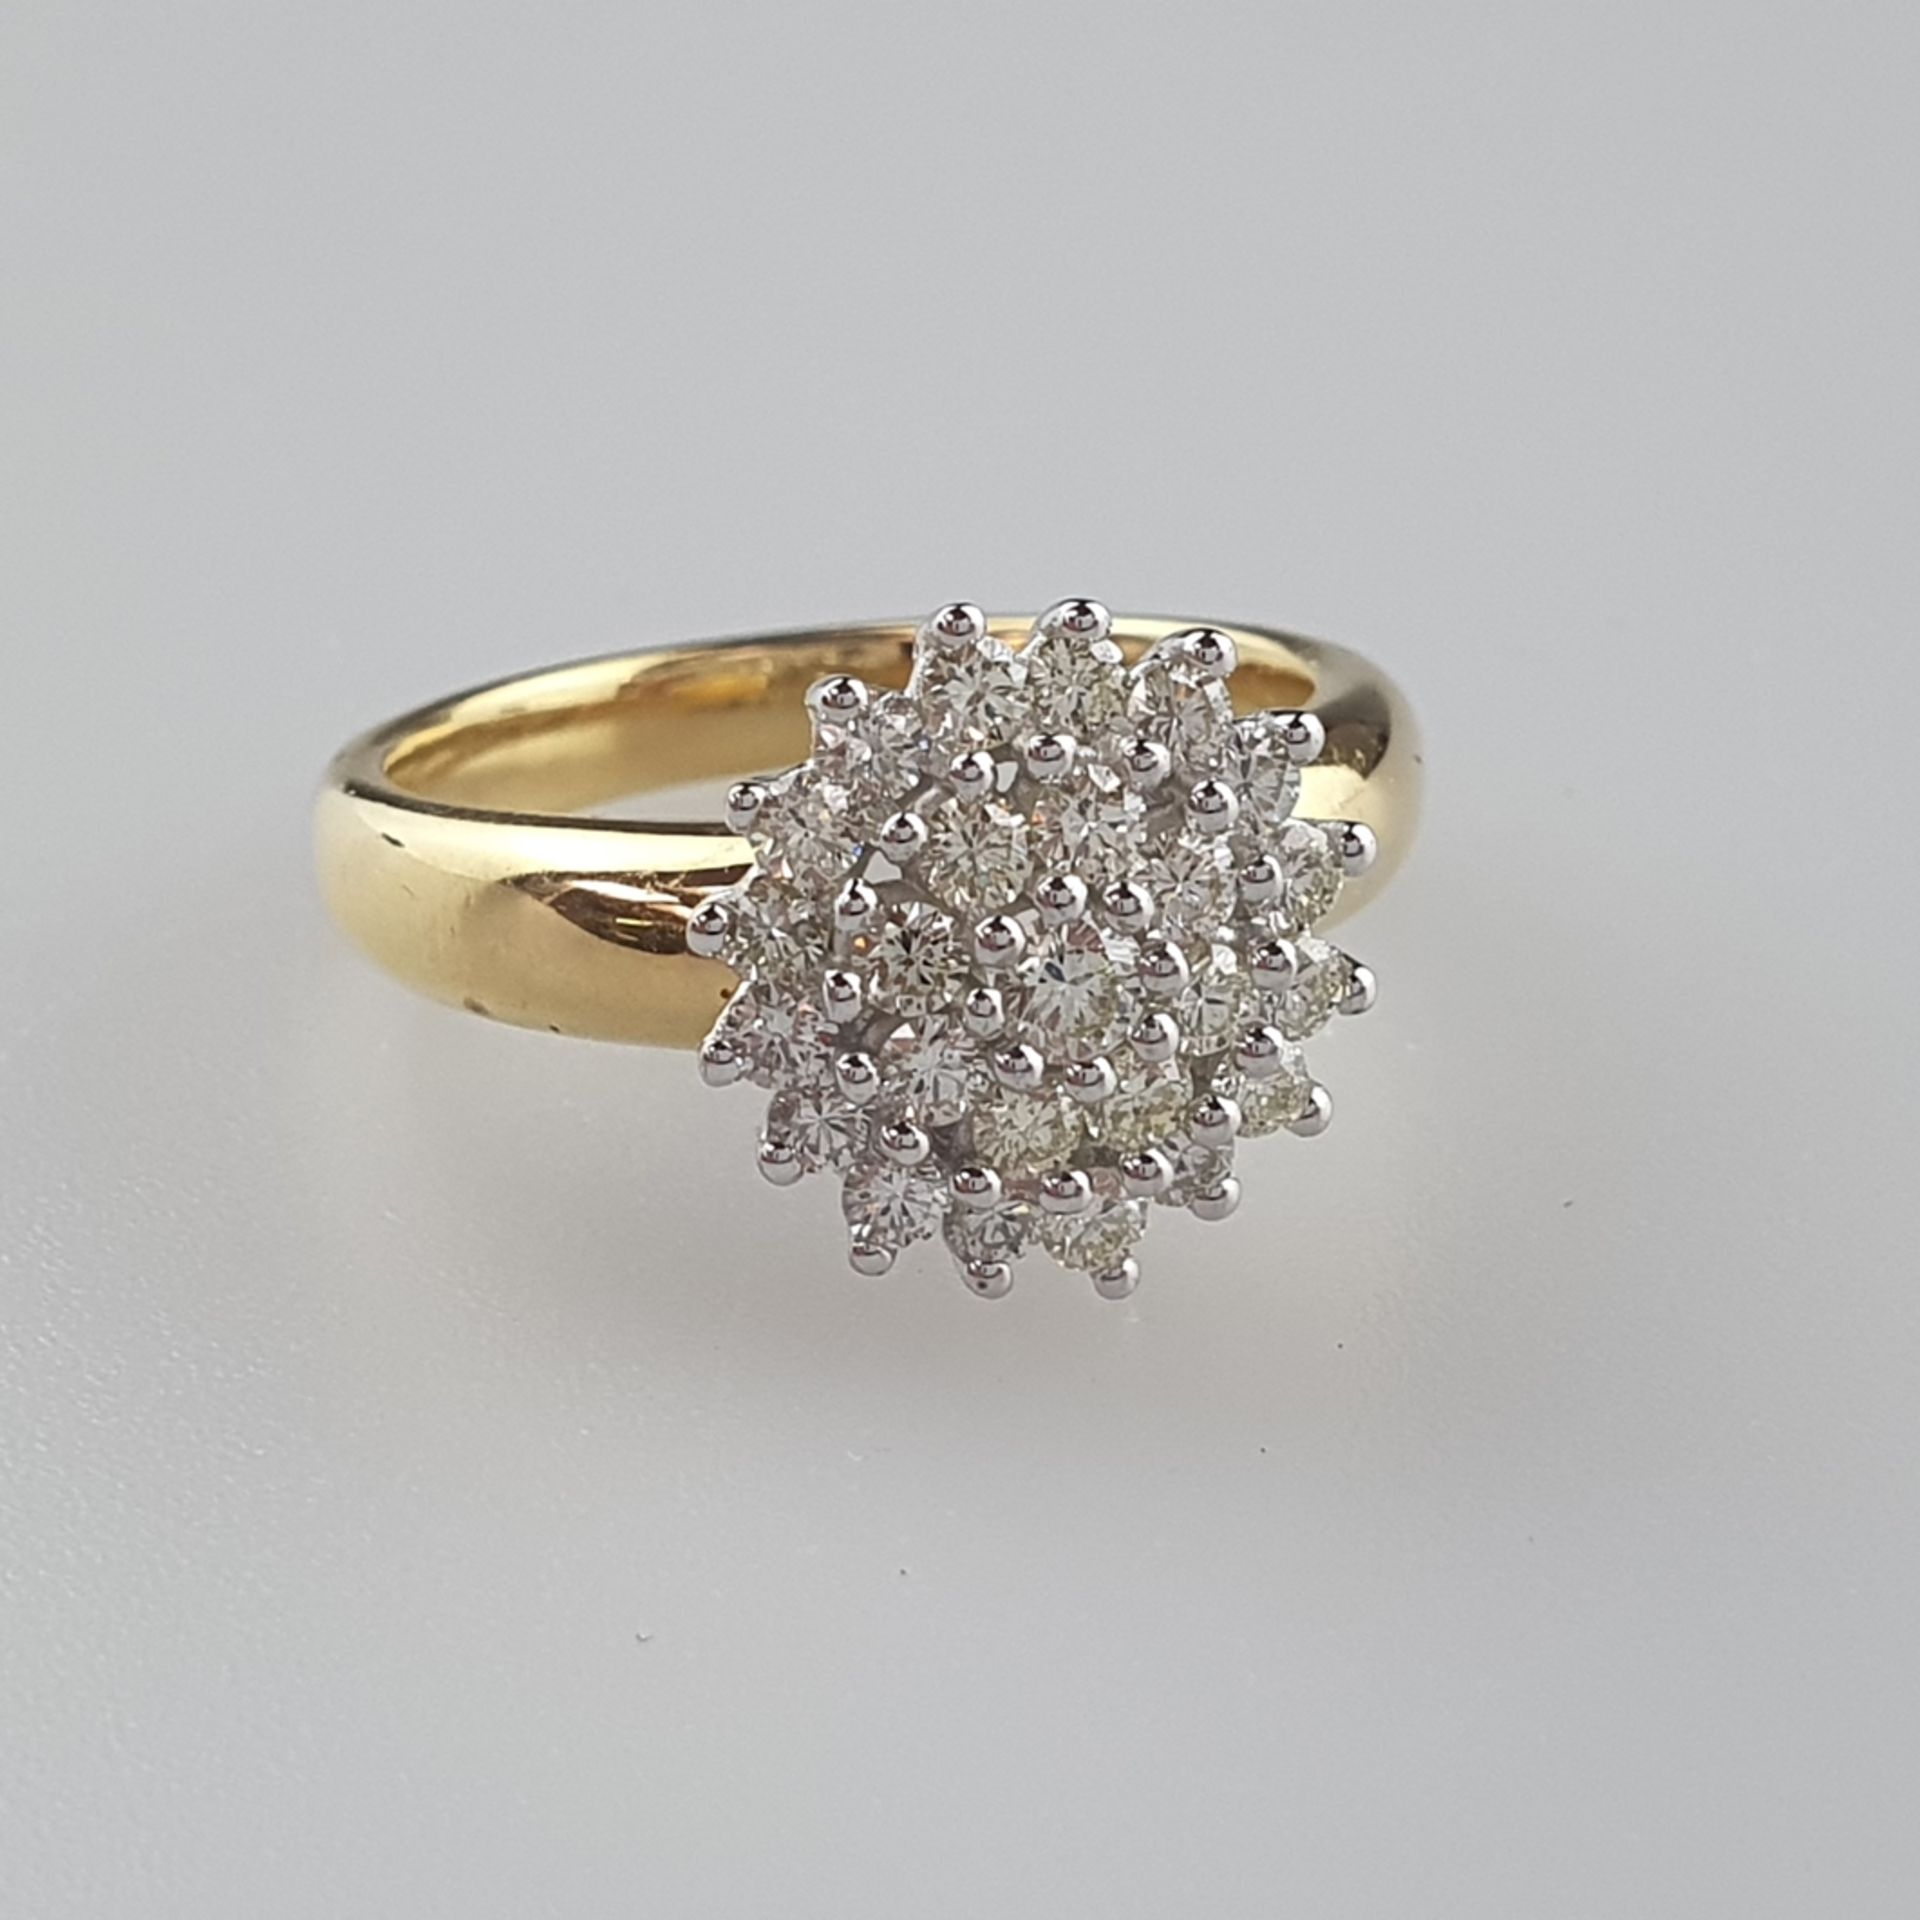 Elegant-klassischer Diamant-Rosettenring - Gelbgold/Weißgold 750/000, runder Ringkopf in mehreren E